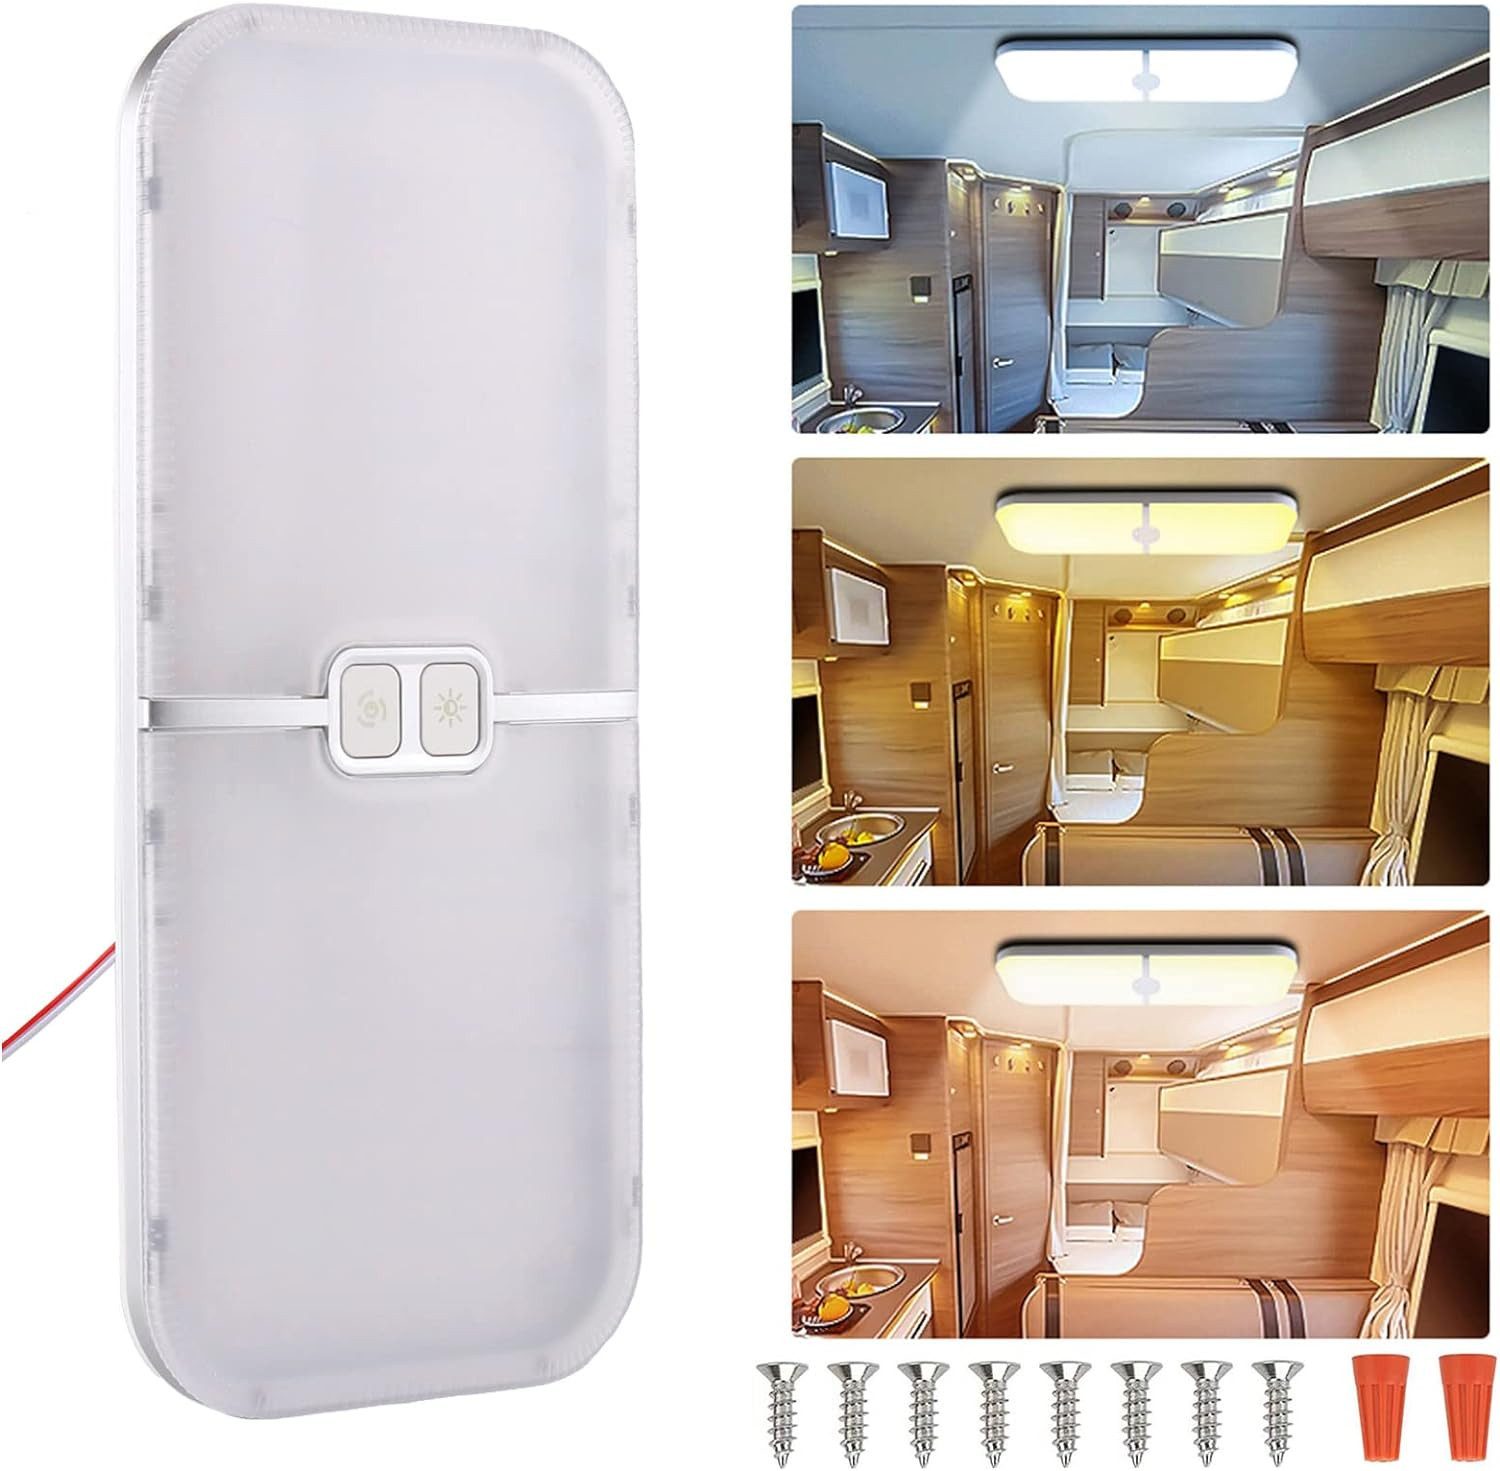 Bedee Deckenleuchte 204 LED Lampe Dimmbar Wohnmobil Auto Innenbeleuchtung 12V, LED fest integriert